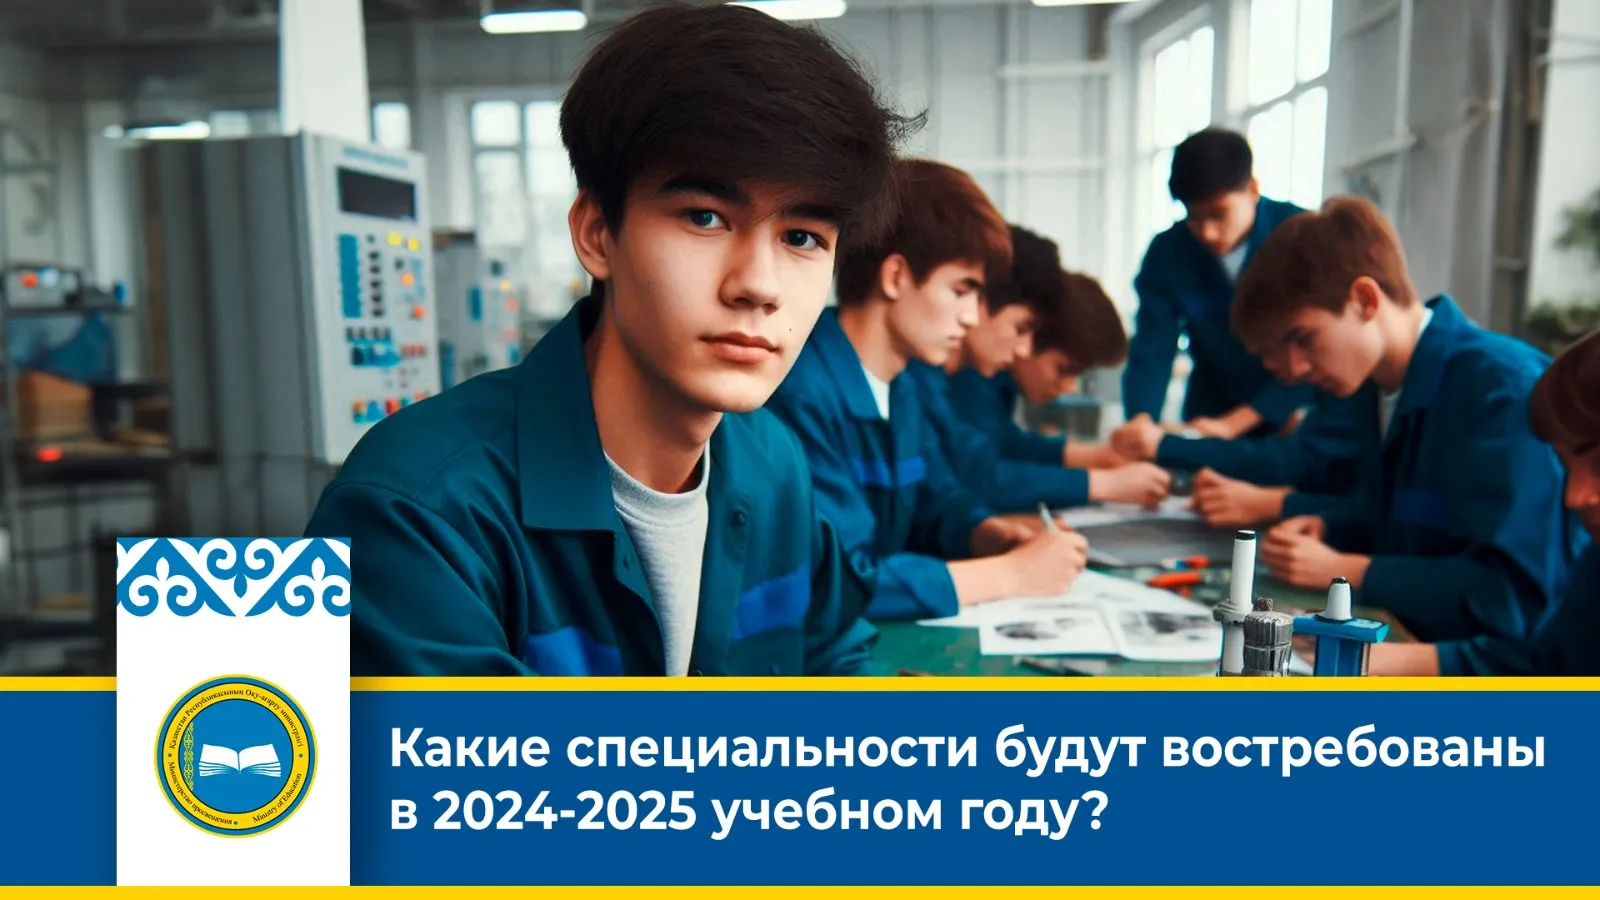 Какие специальности будут актуальны в 2024-2025 учебном году? фото taspanews.kz от 06/26/2024 12:54:53 фото на taspanews.kz от 26 июня 2024 12:54